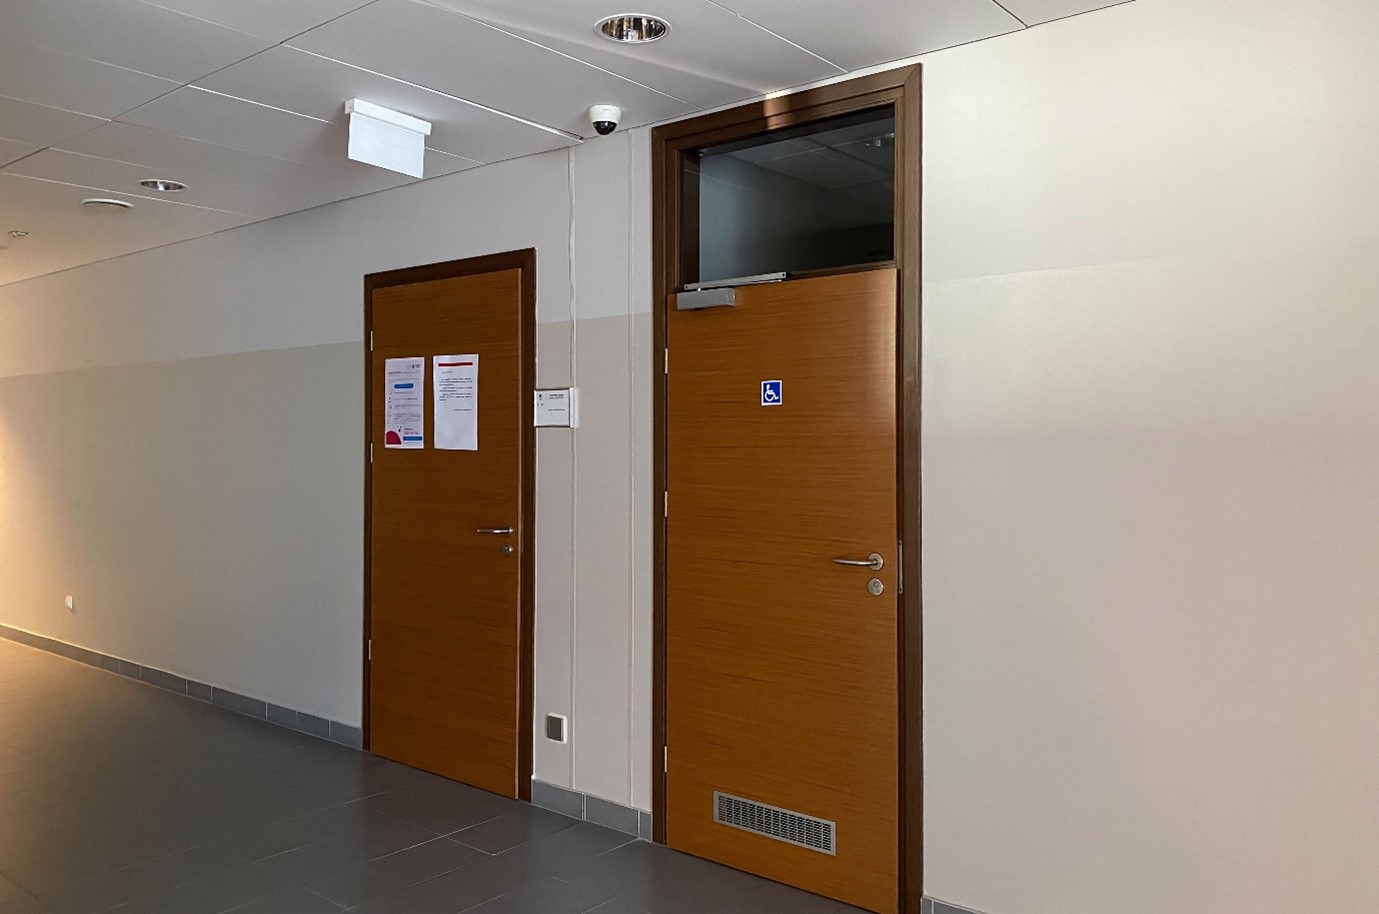 Korytarz budynku wydziału. Na środku dwoje drzwi:  z lewej do sali, z prawej do łazienki przystosowanej do potrzeb osób z niepełnosprawnościami. Obok sali tabliczka z numerem, na drzwiach łazienki piktogram.